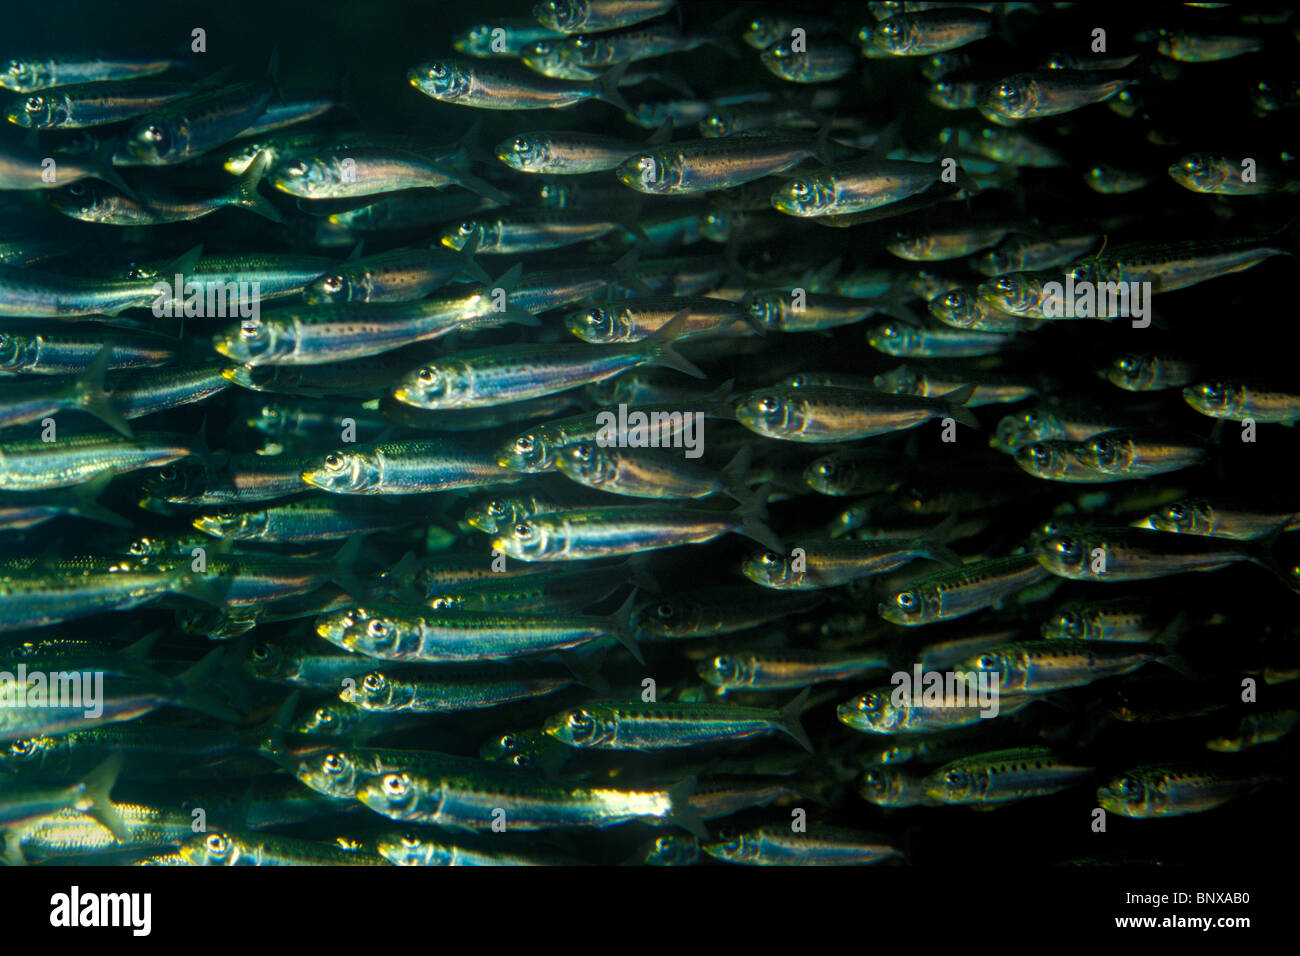 Pacific sardine, Sardinops sagax, Pacific ocean Stock Photo